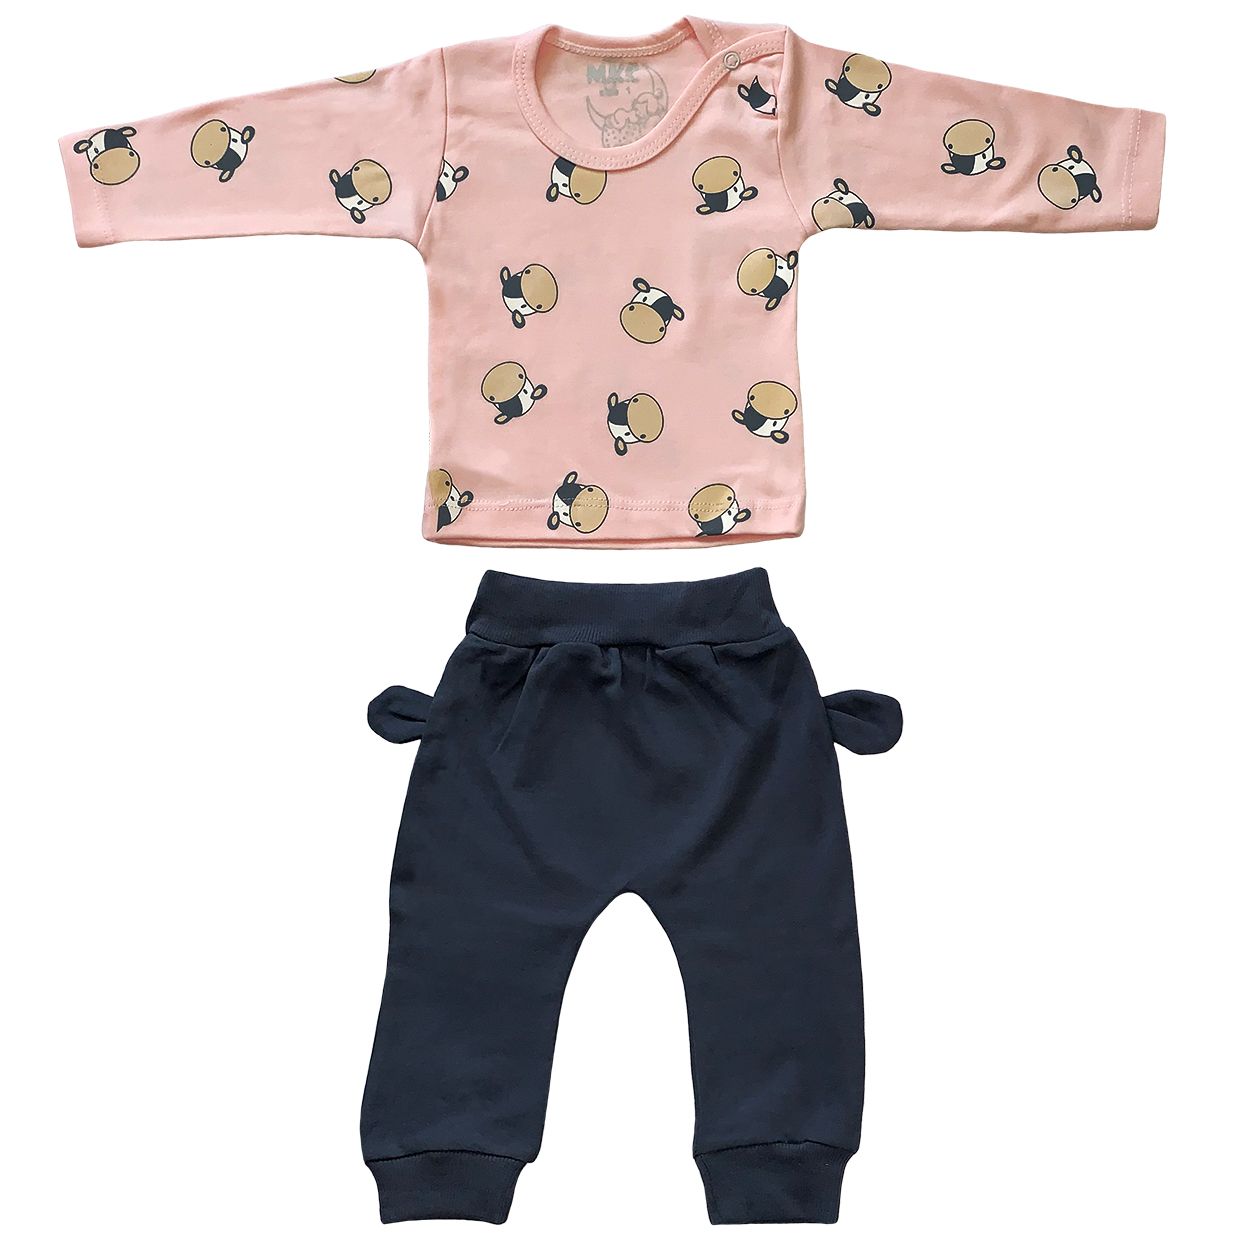 ست تی شرت و شلوار نوزادی طرح گاو کد FF-080 -  - 2